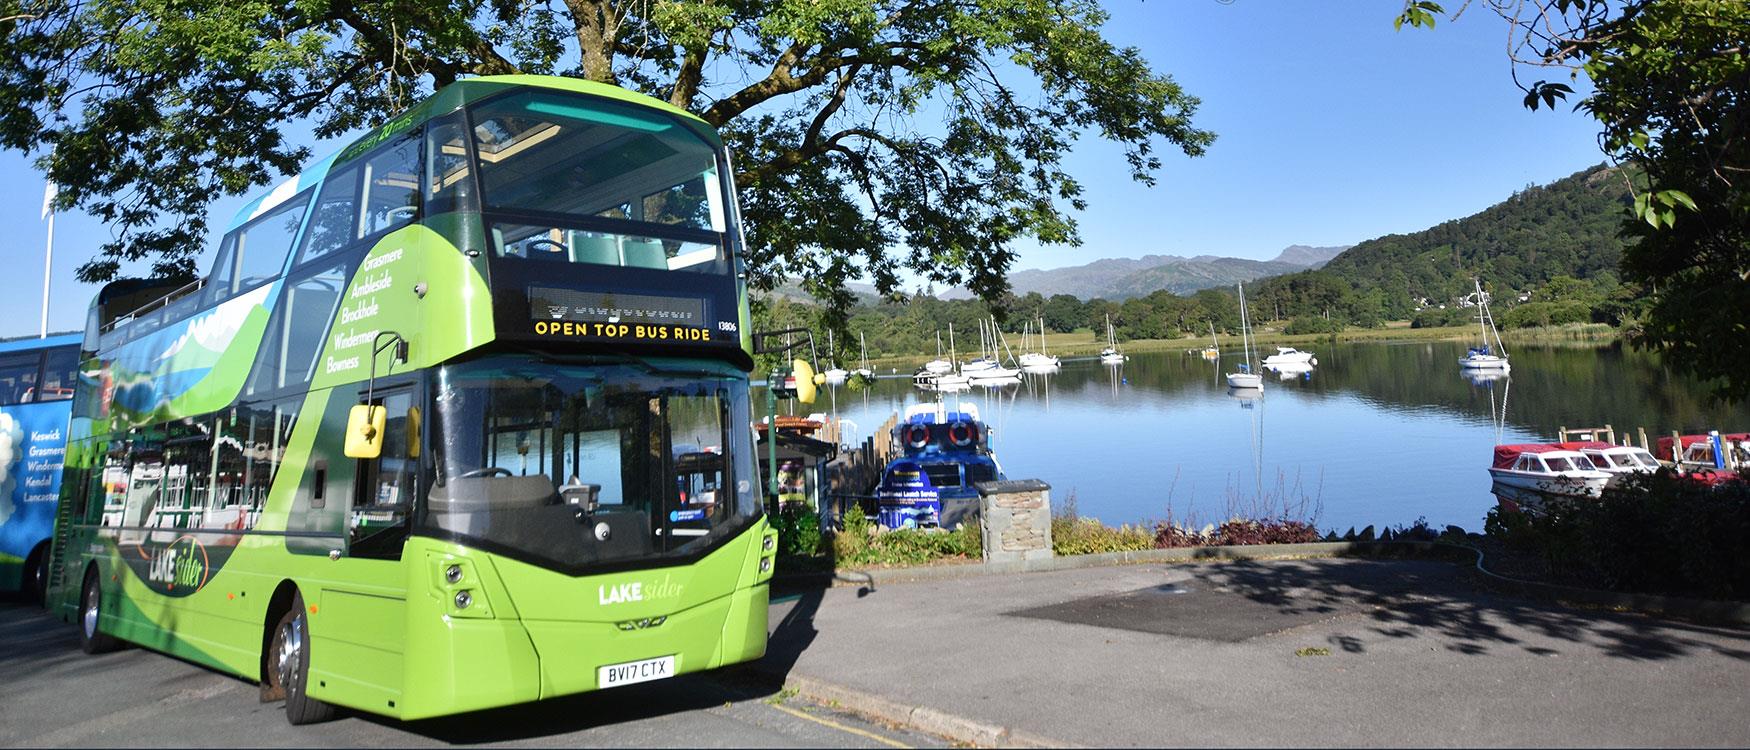 mini bus tours lake district